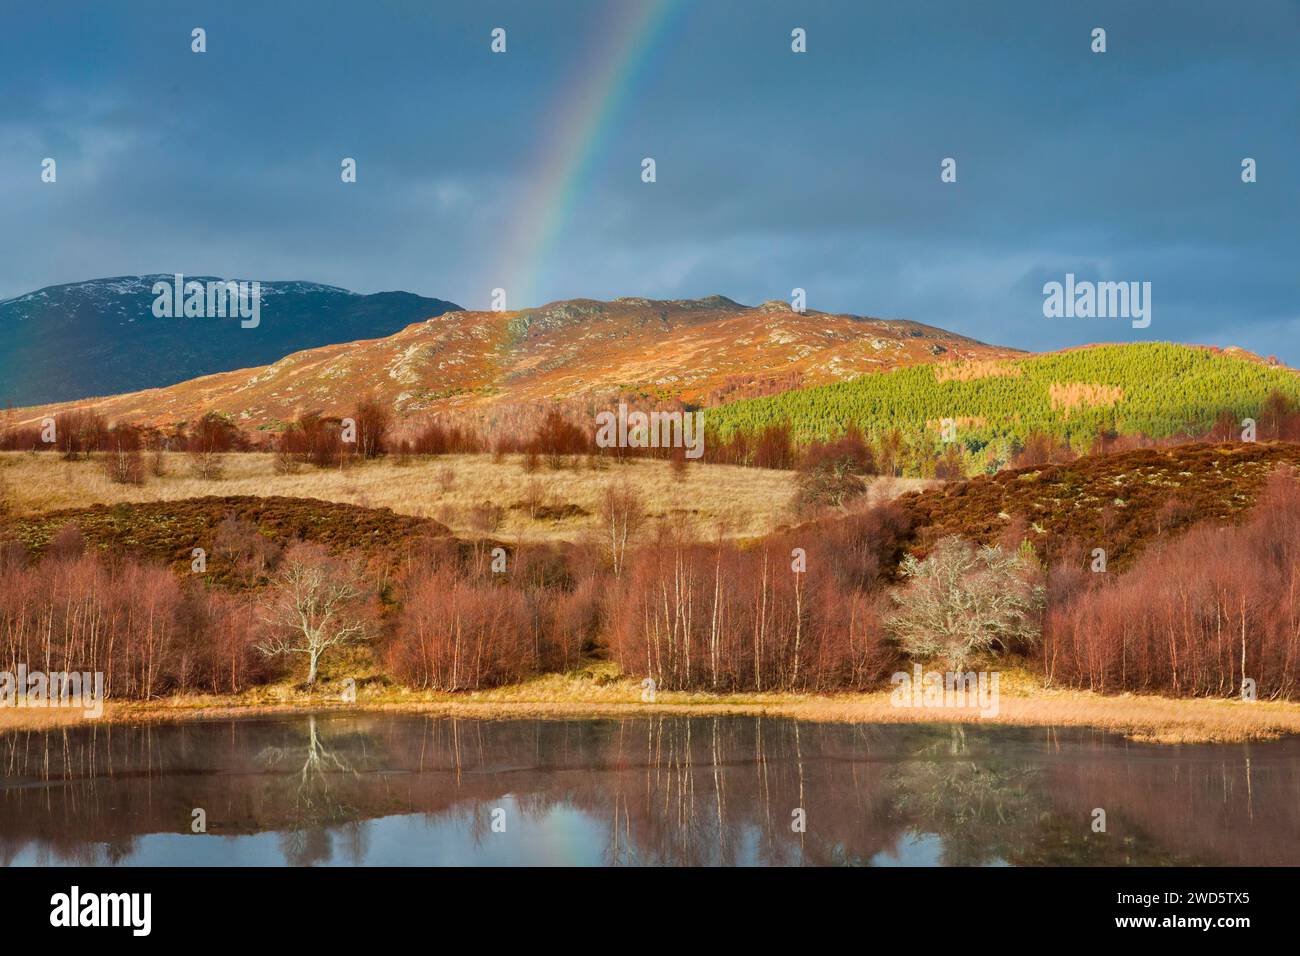 Atmosphärischer bewölkter Himmel mit Regenbogen über bergigen, teils bewaldeten Highlands im Westen Schottlands, mit rot verzweigten Birken am Rand einer A Stockfoto